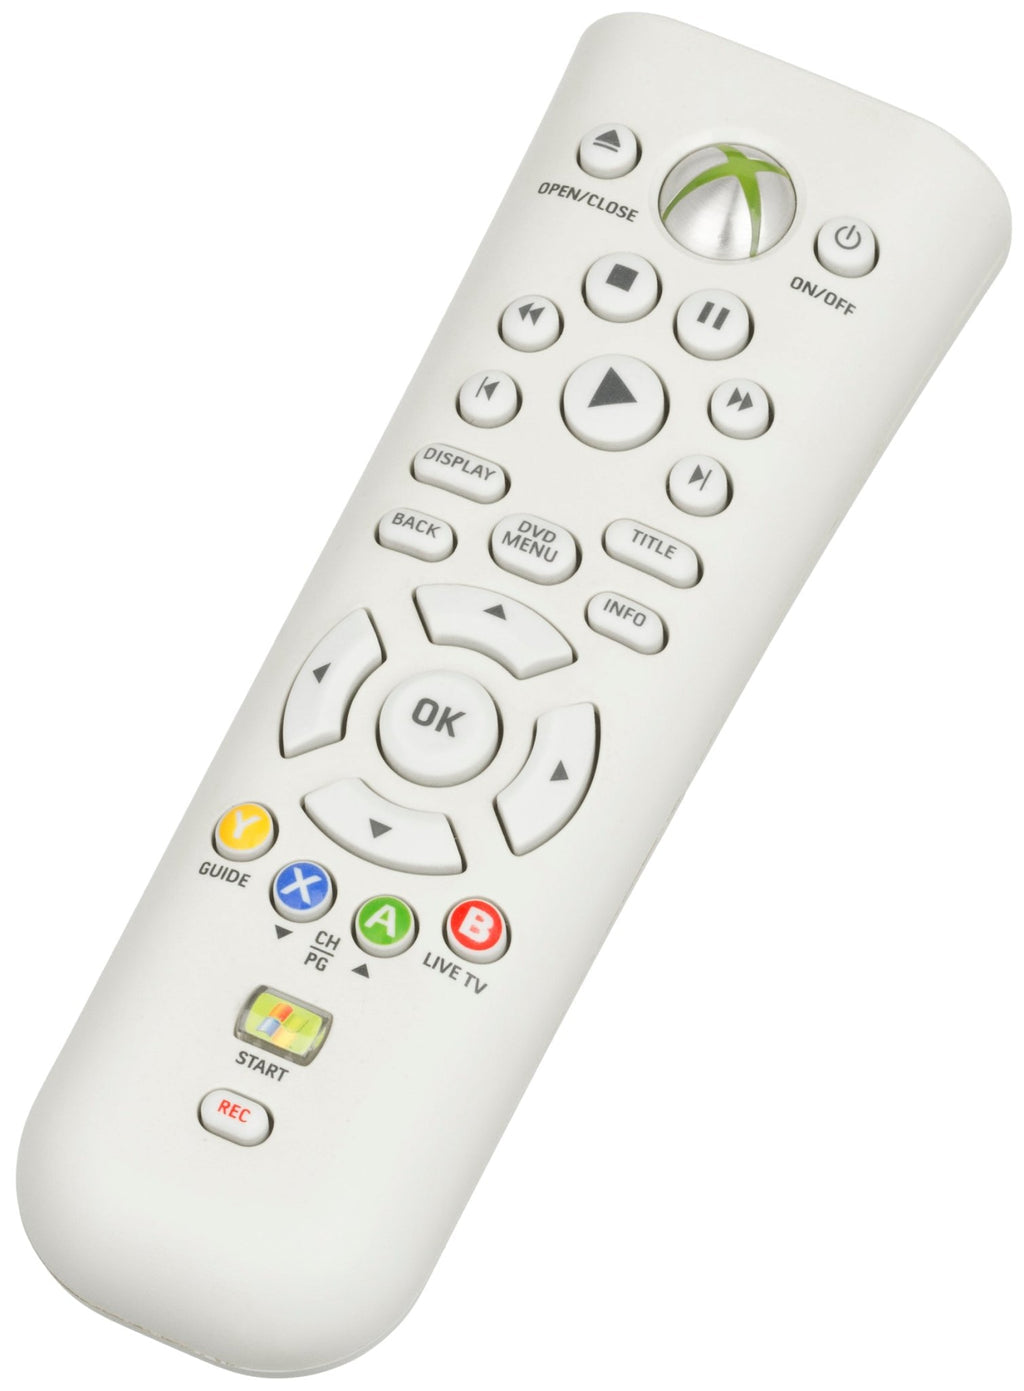 Accessory | Xbox 360 | Genuine Media Remote Control